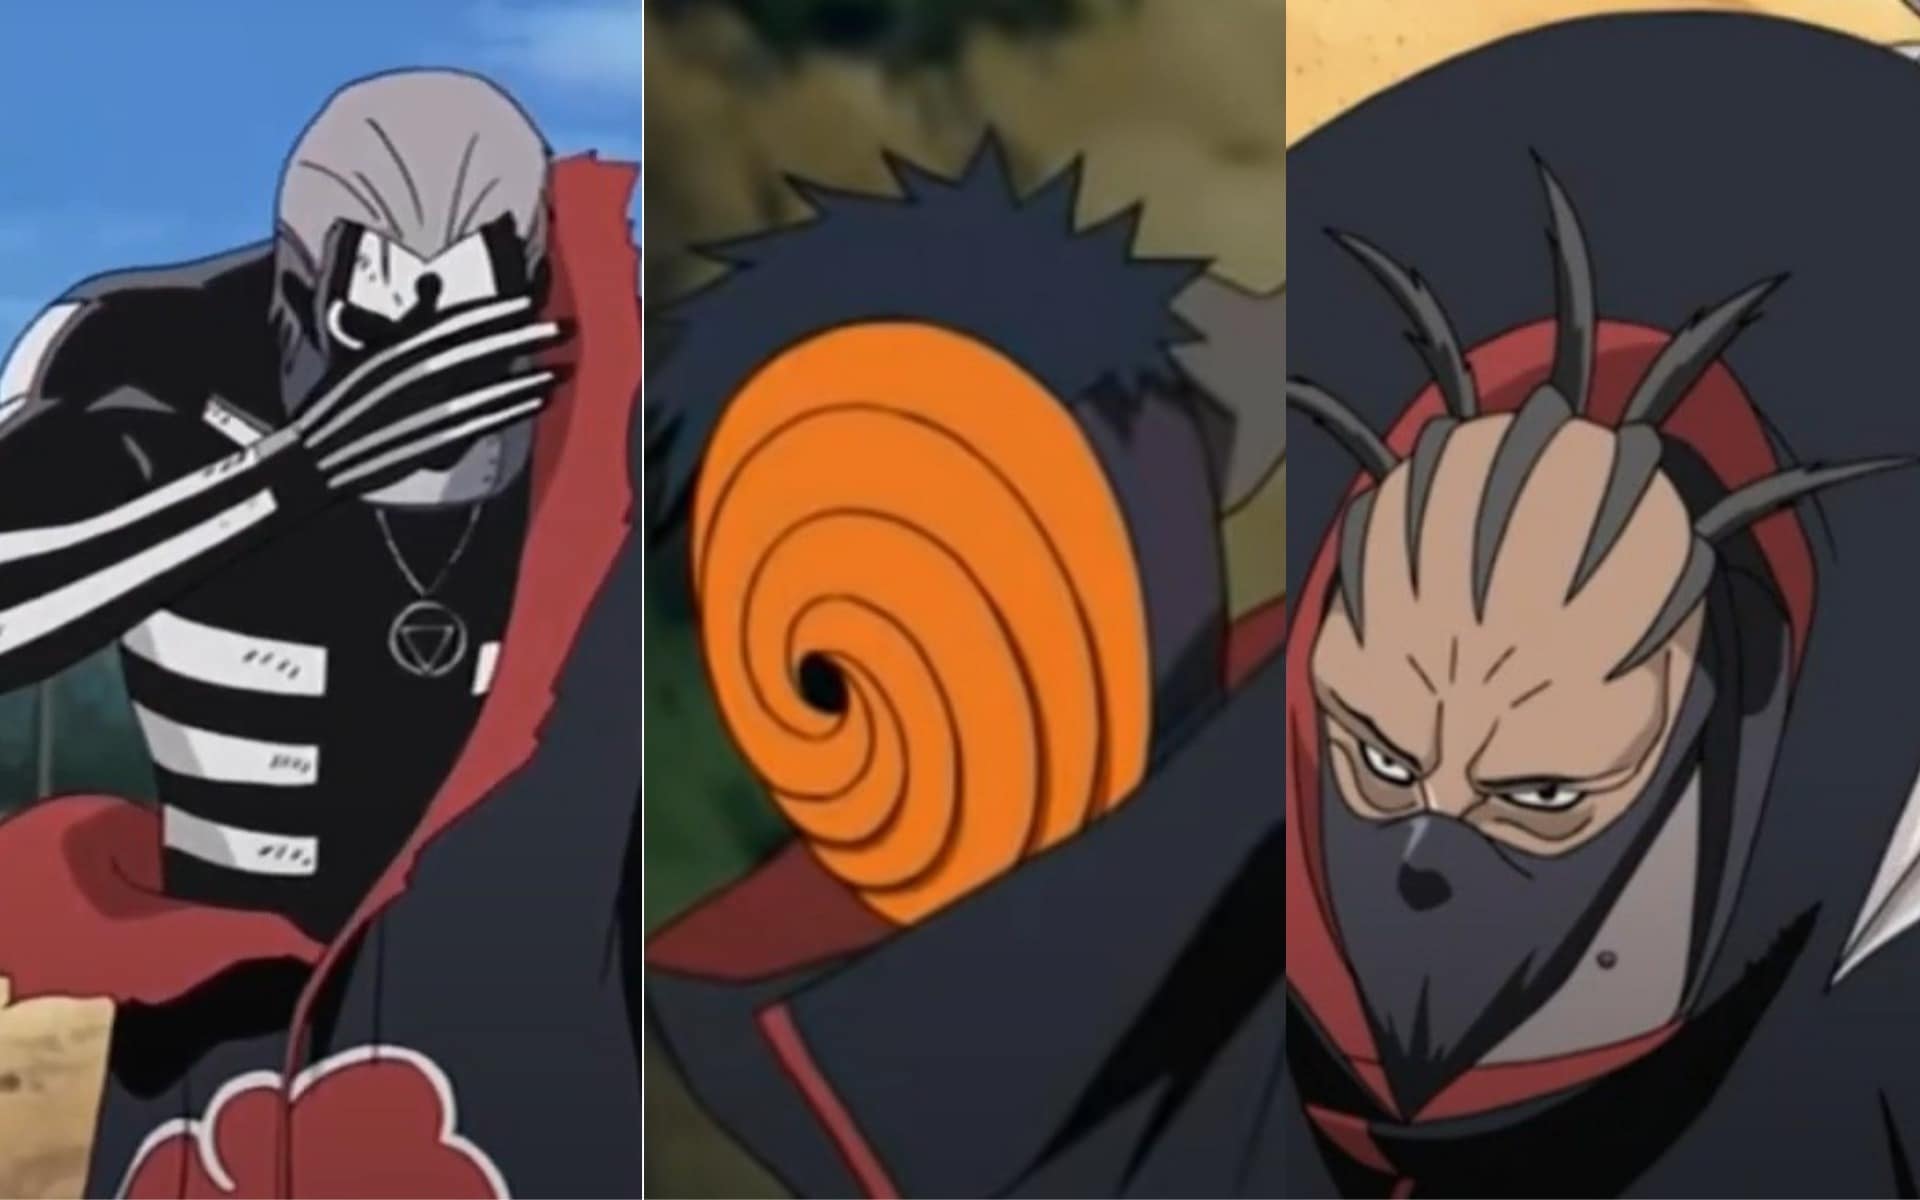 A Akatsuki é uma organização criminosa do anime "Naruto" e se tornou marcante pelos seus enigmáticos e poderosos integrantes. Veja o nosso ranking de força dos ninjas que já fizeram parte da Akatsuki, sendo a ordem do mais fraco para o mais forte.